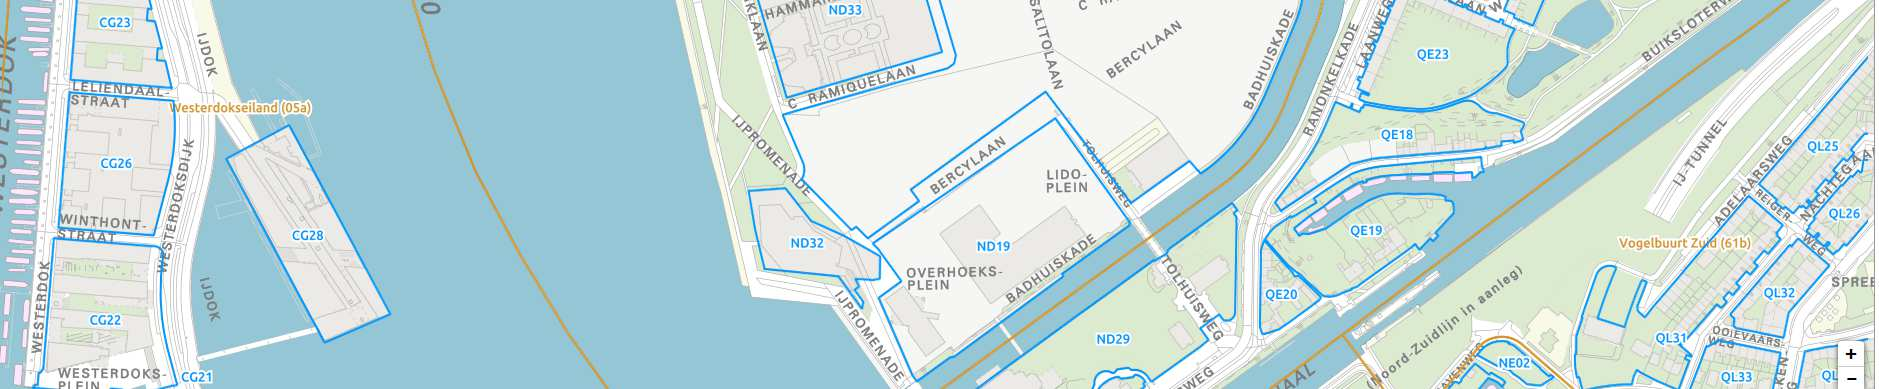 Elzenhagen + 79 21 Buikslotermeer okt 2016 wijk Buikslotermeer (incl. 83 18 Elzenhagen) jan 2007 % 0 20 40 60 80 100 geen nieuwe stedeling nieuwe stedeling ".